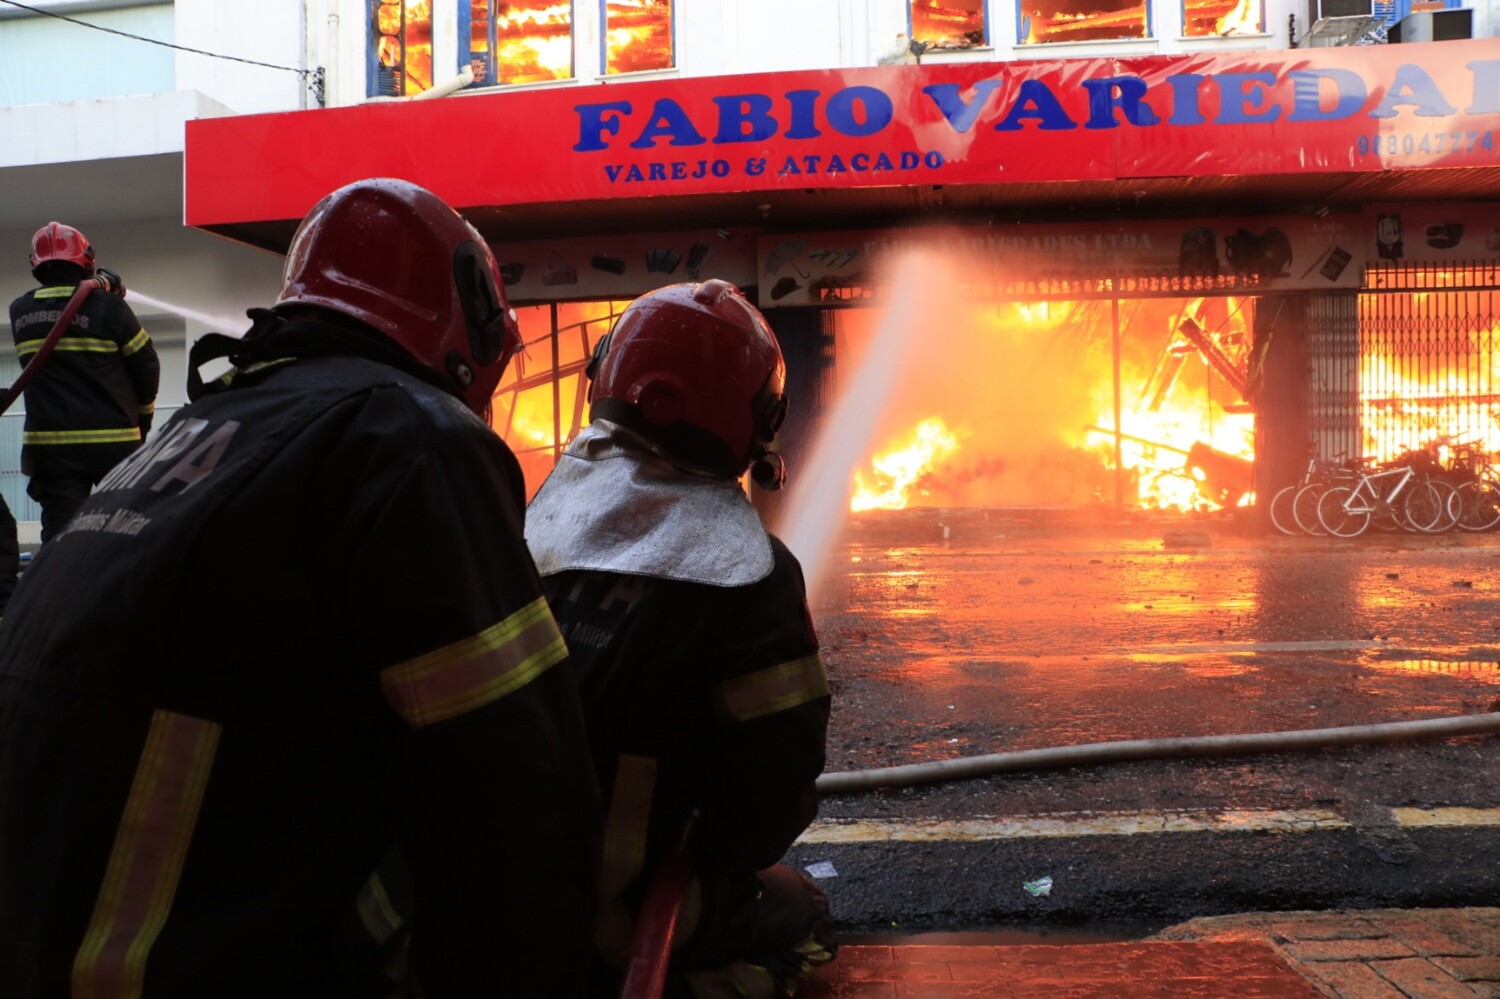 
        
        
            Veja imagens do incêndio em loja do comércio em Belém
        
    